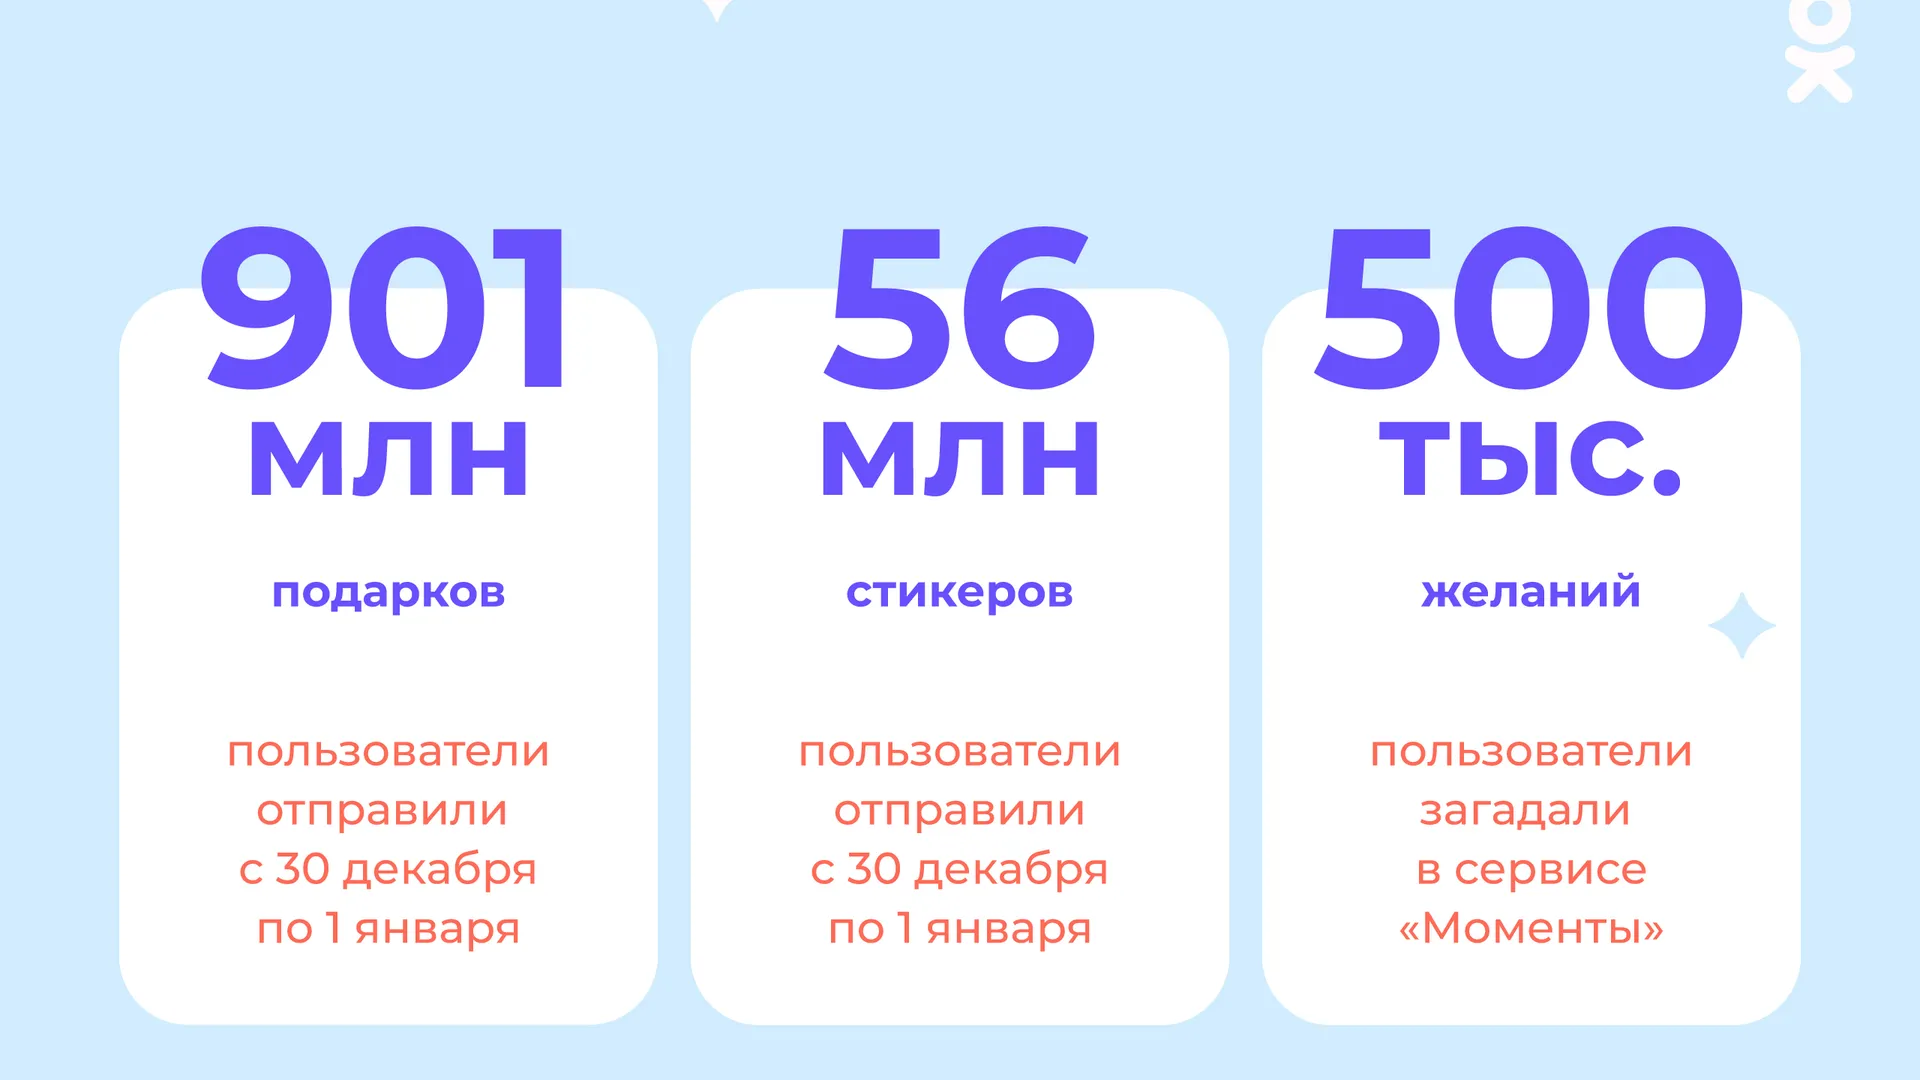 Пользователи «Одноклассников» подарили друг другу 900 миллионов подарков на новогодних праздниках